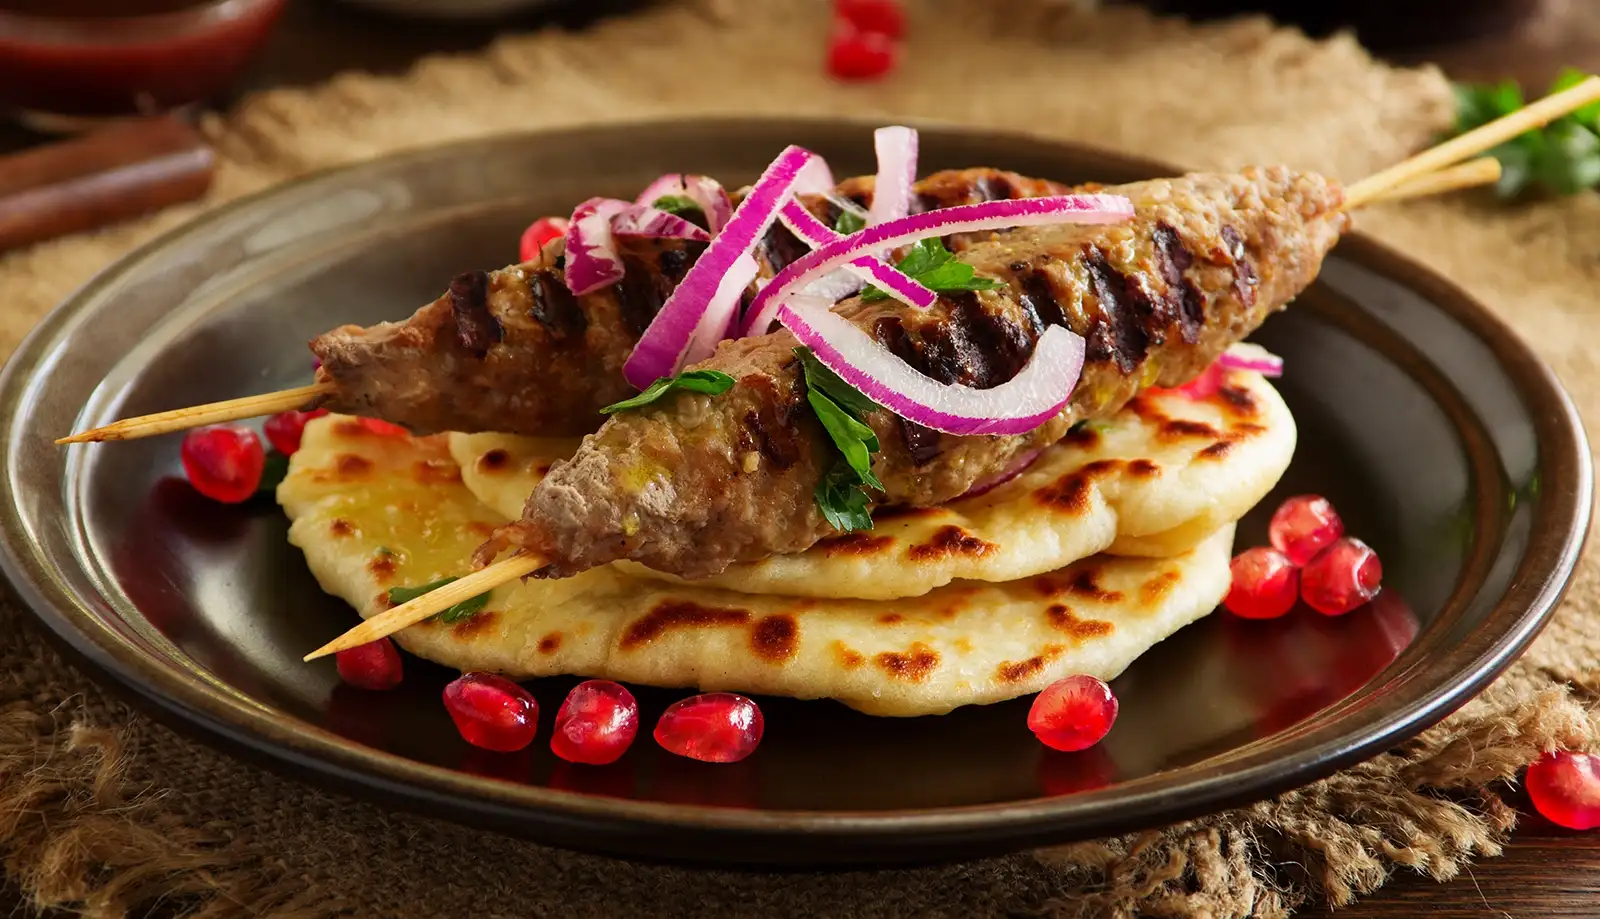 Món Kebab truyền thống nổi tiếng vang danh của người dân Thổ Nhĩ Kỳ